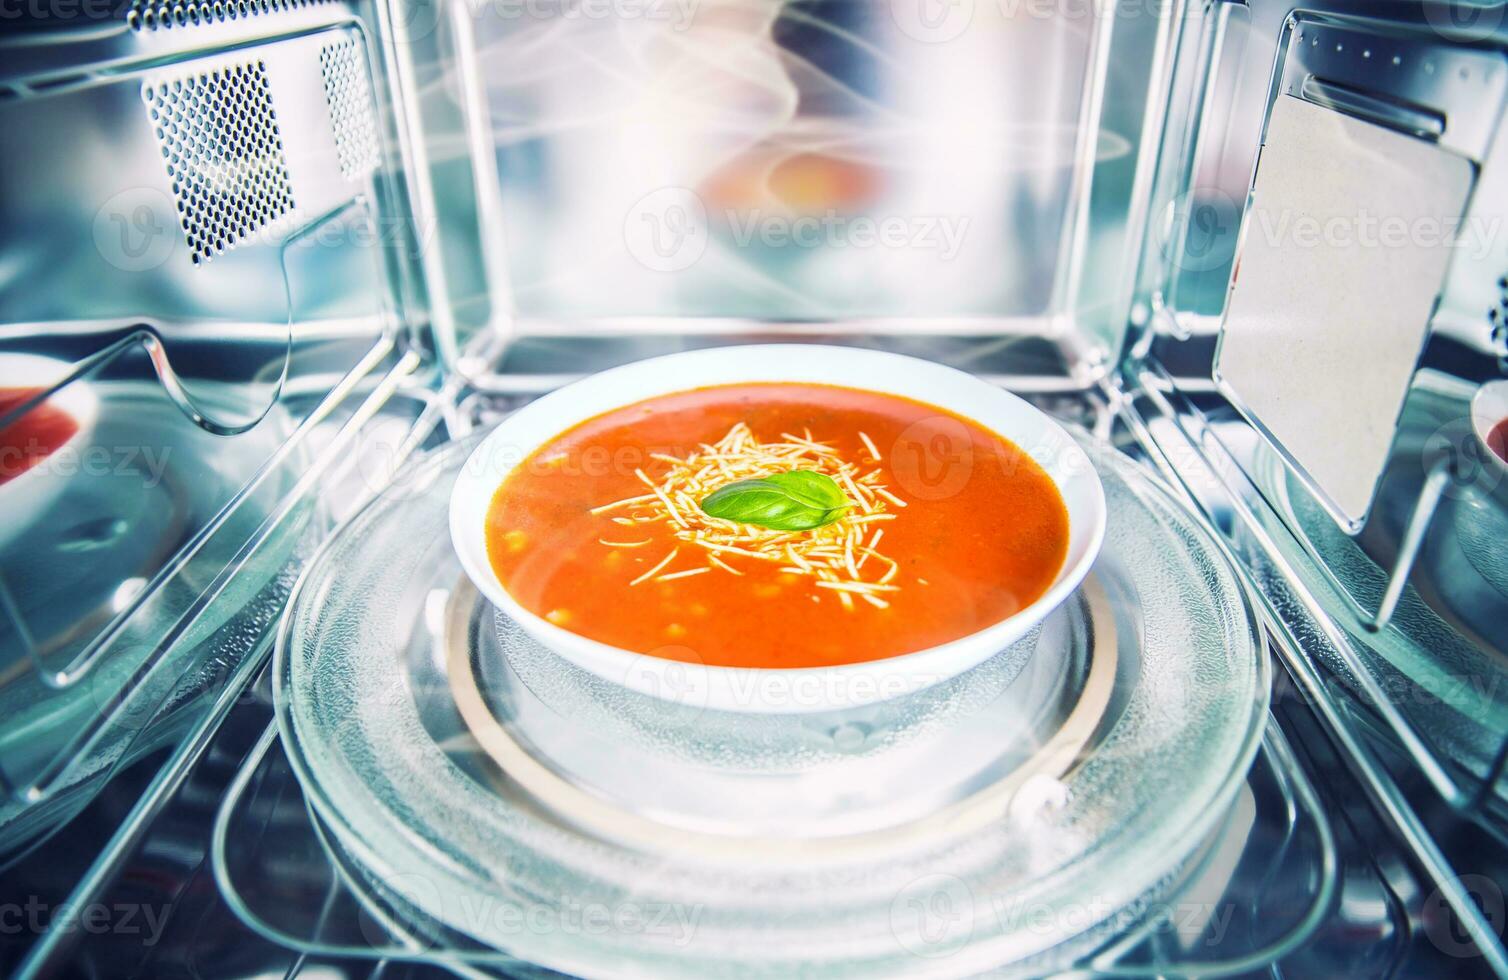 Innerhalb Aussicht von Neu sauber rostfrei Mikrowelle Ofen mit ein Tomate Suppe im Weiß Teller foto